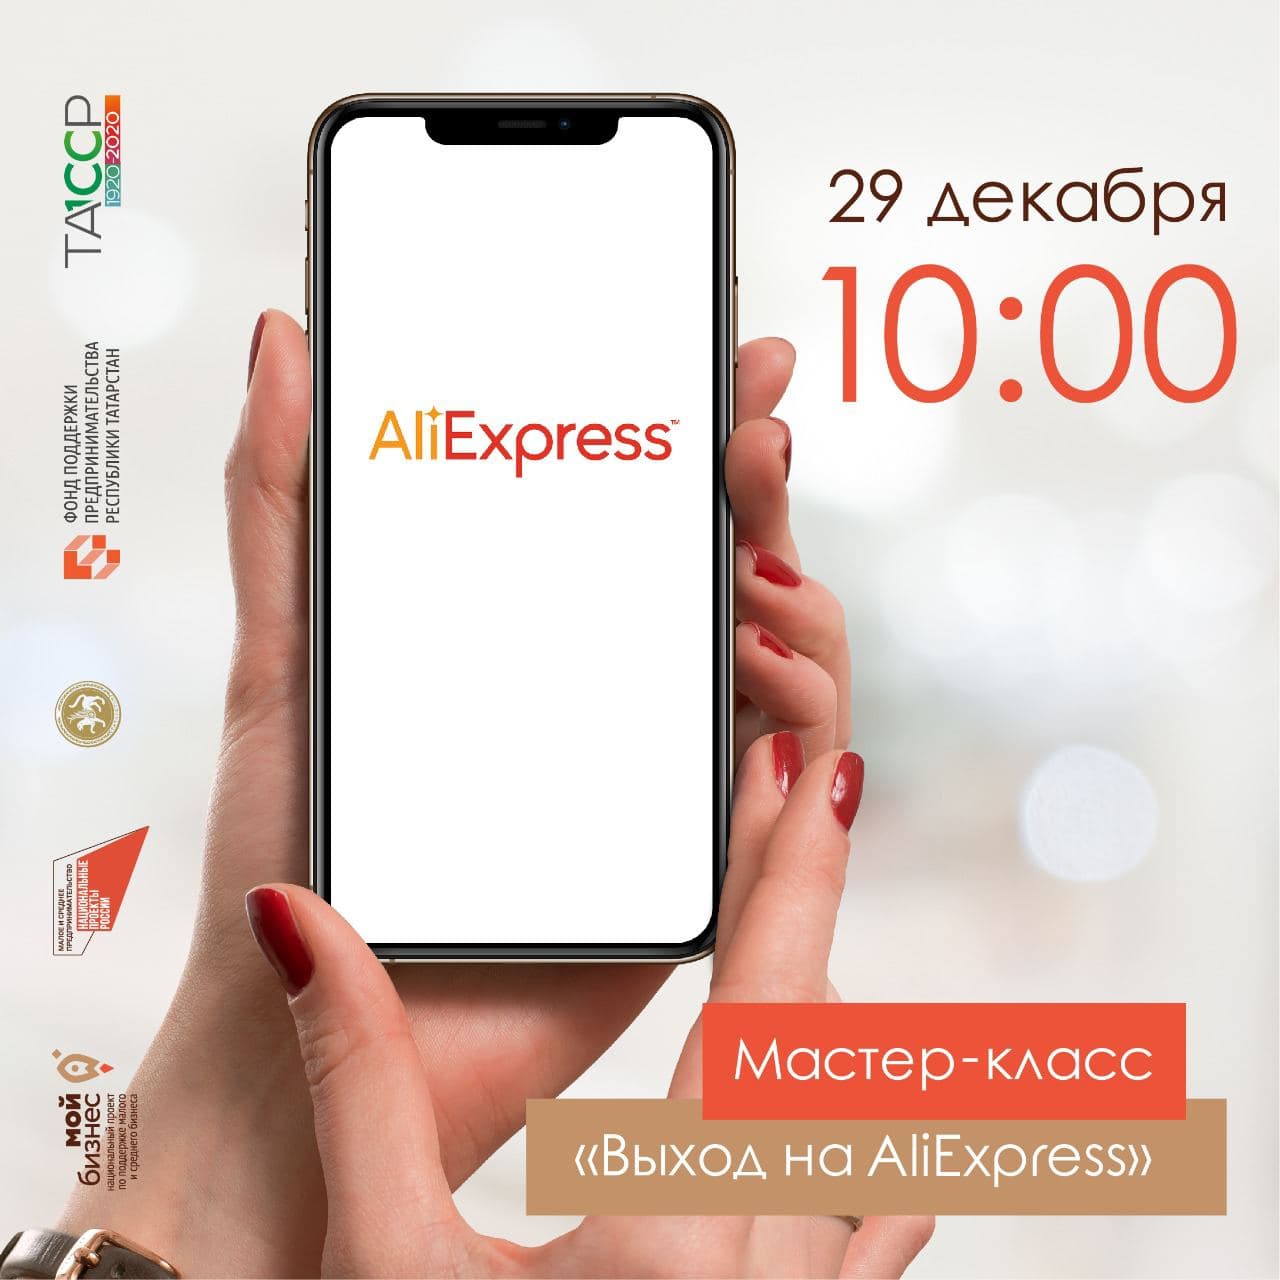 Мастер-класс по освоению технологии размещения товаров на глобальной интернет-платформе AliExpress.